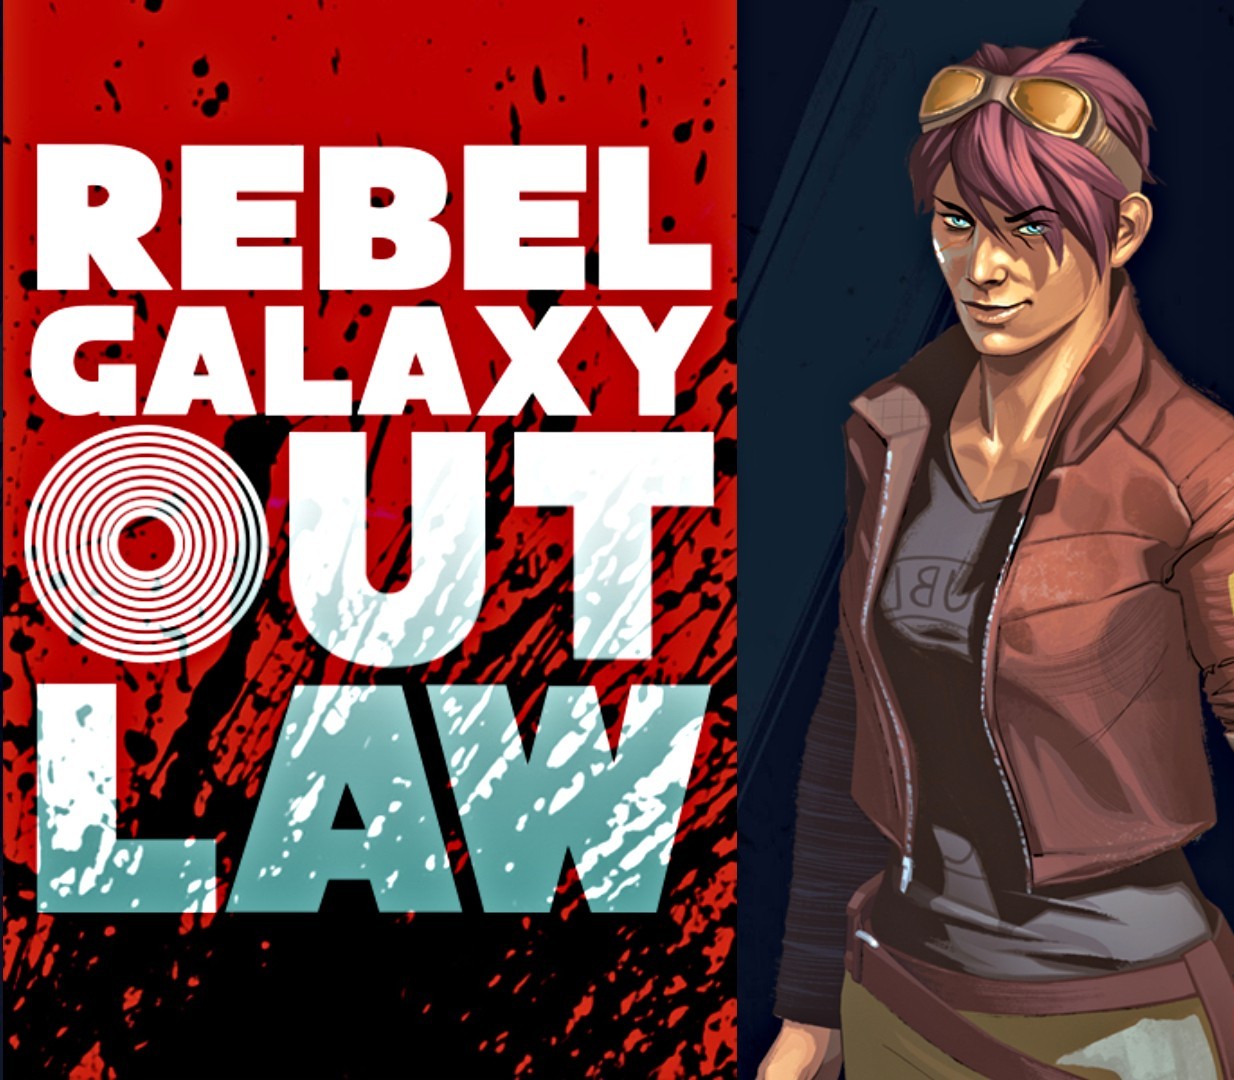 Rebel Galaxy Outlaw Steam